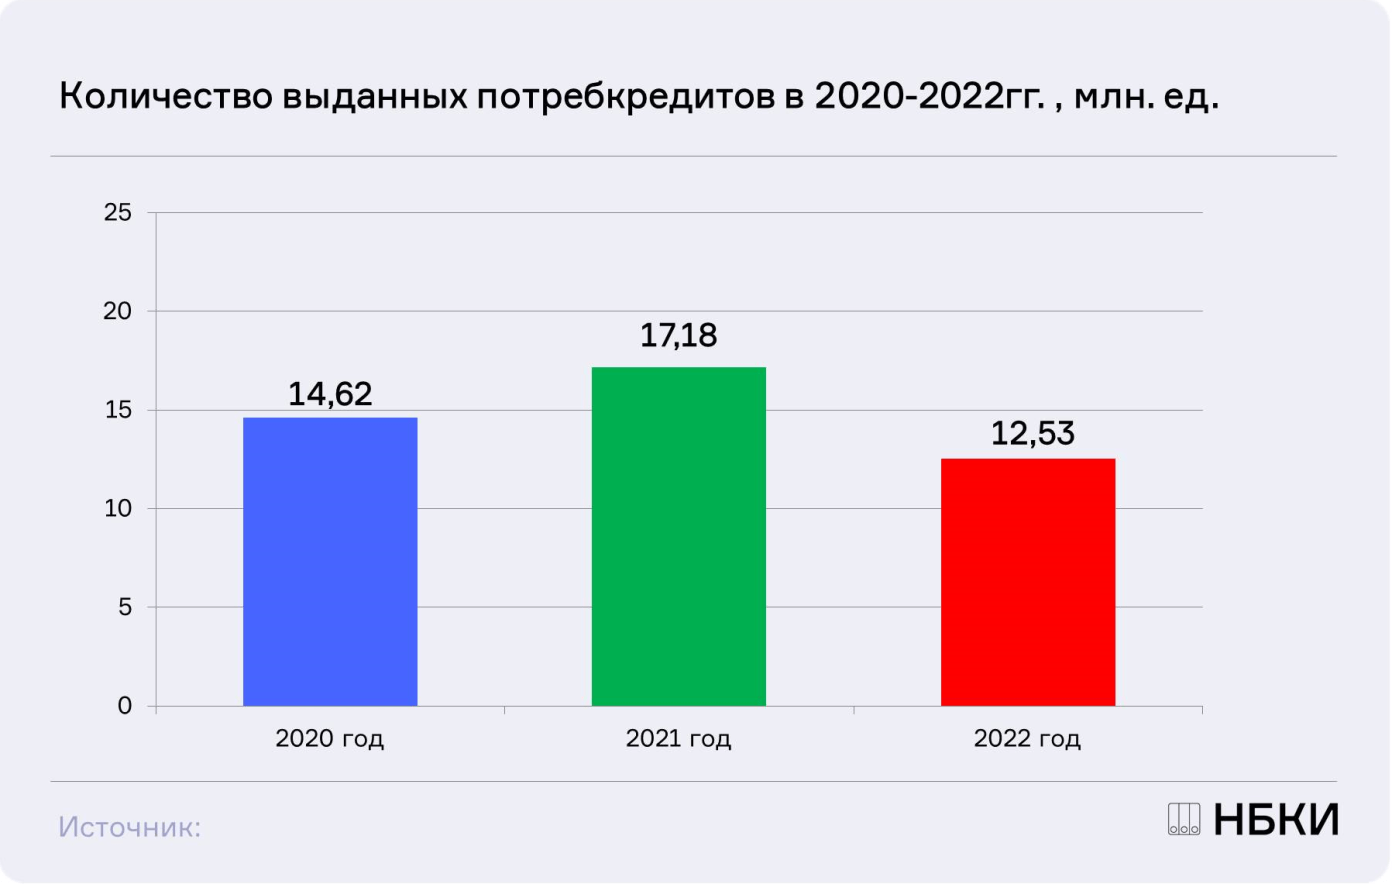 НБКИ: в 2022 году было выдано 12,5 млн. потребительских кредитов